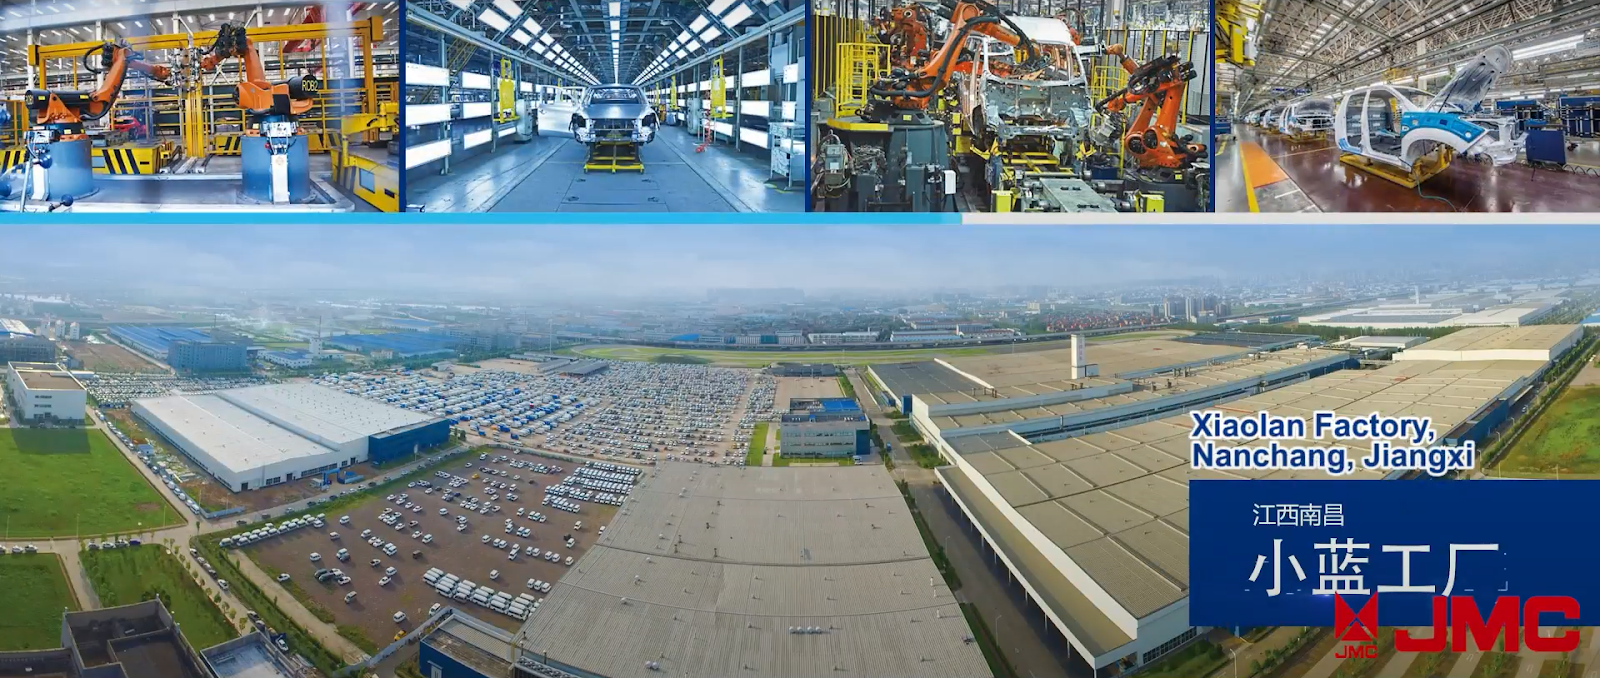 Nhà máy Xiaolan với quy mô lớn và chuyền sản xuất hiện đại đặt tại Nanchang